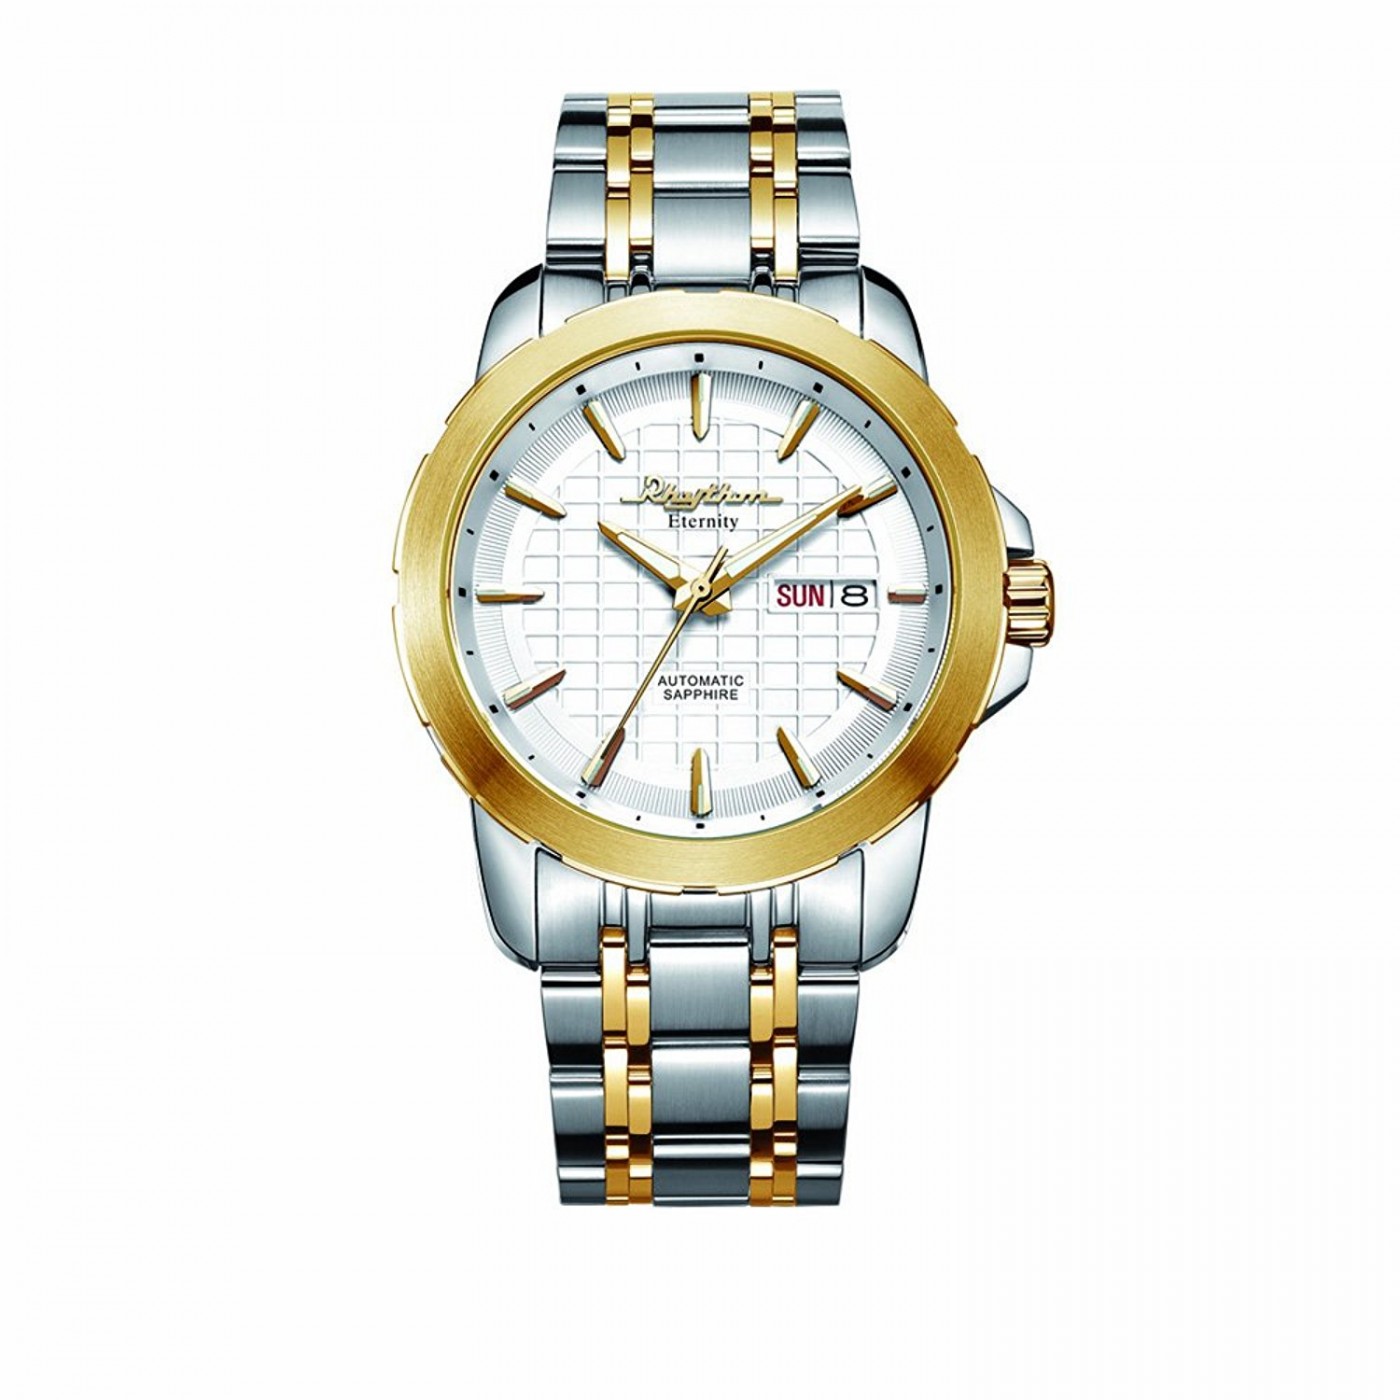 Buy Mens Watch,Automatic Self-Winding Mechanical Skeleton Stainless Steel  Waterproof Diamond Dial Wrist Watch Black, AllBlack, at Amazon.in